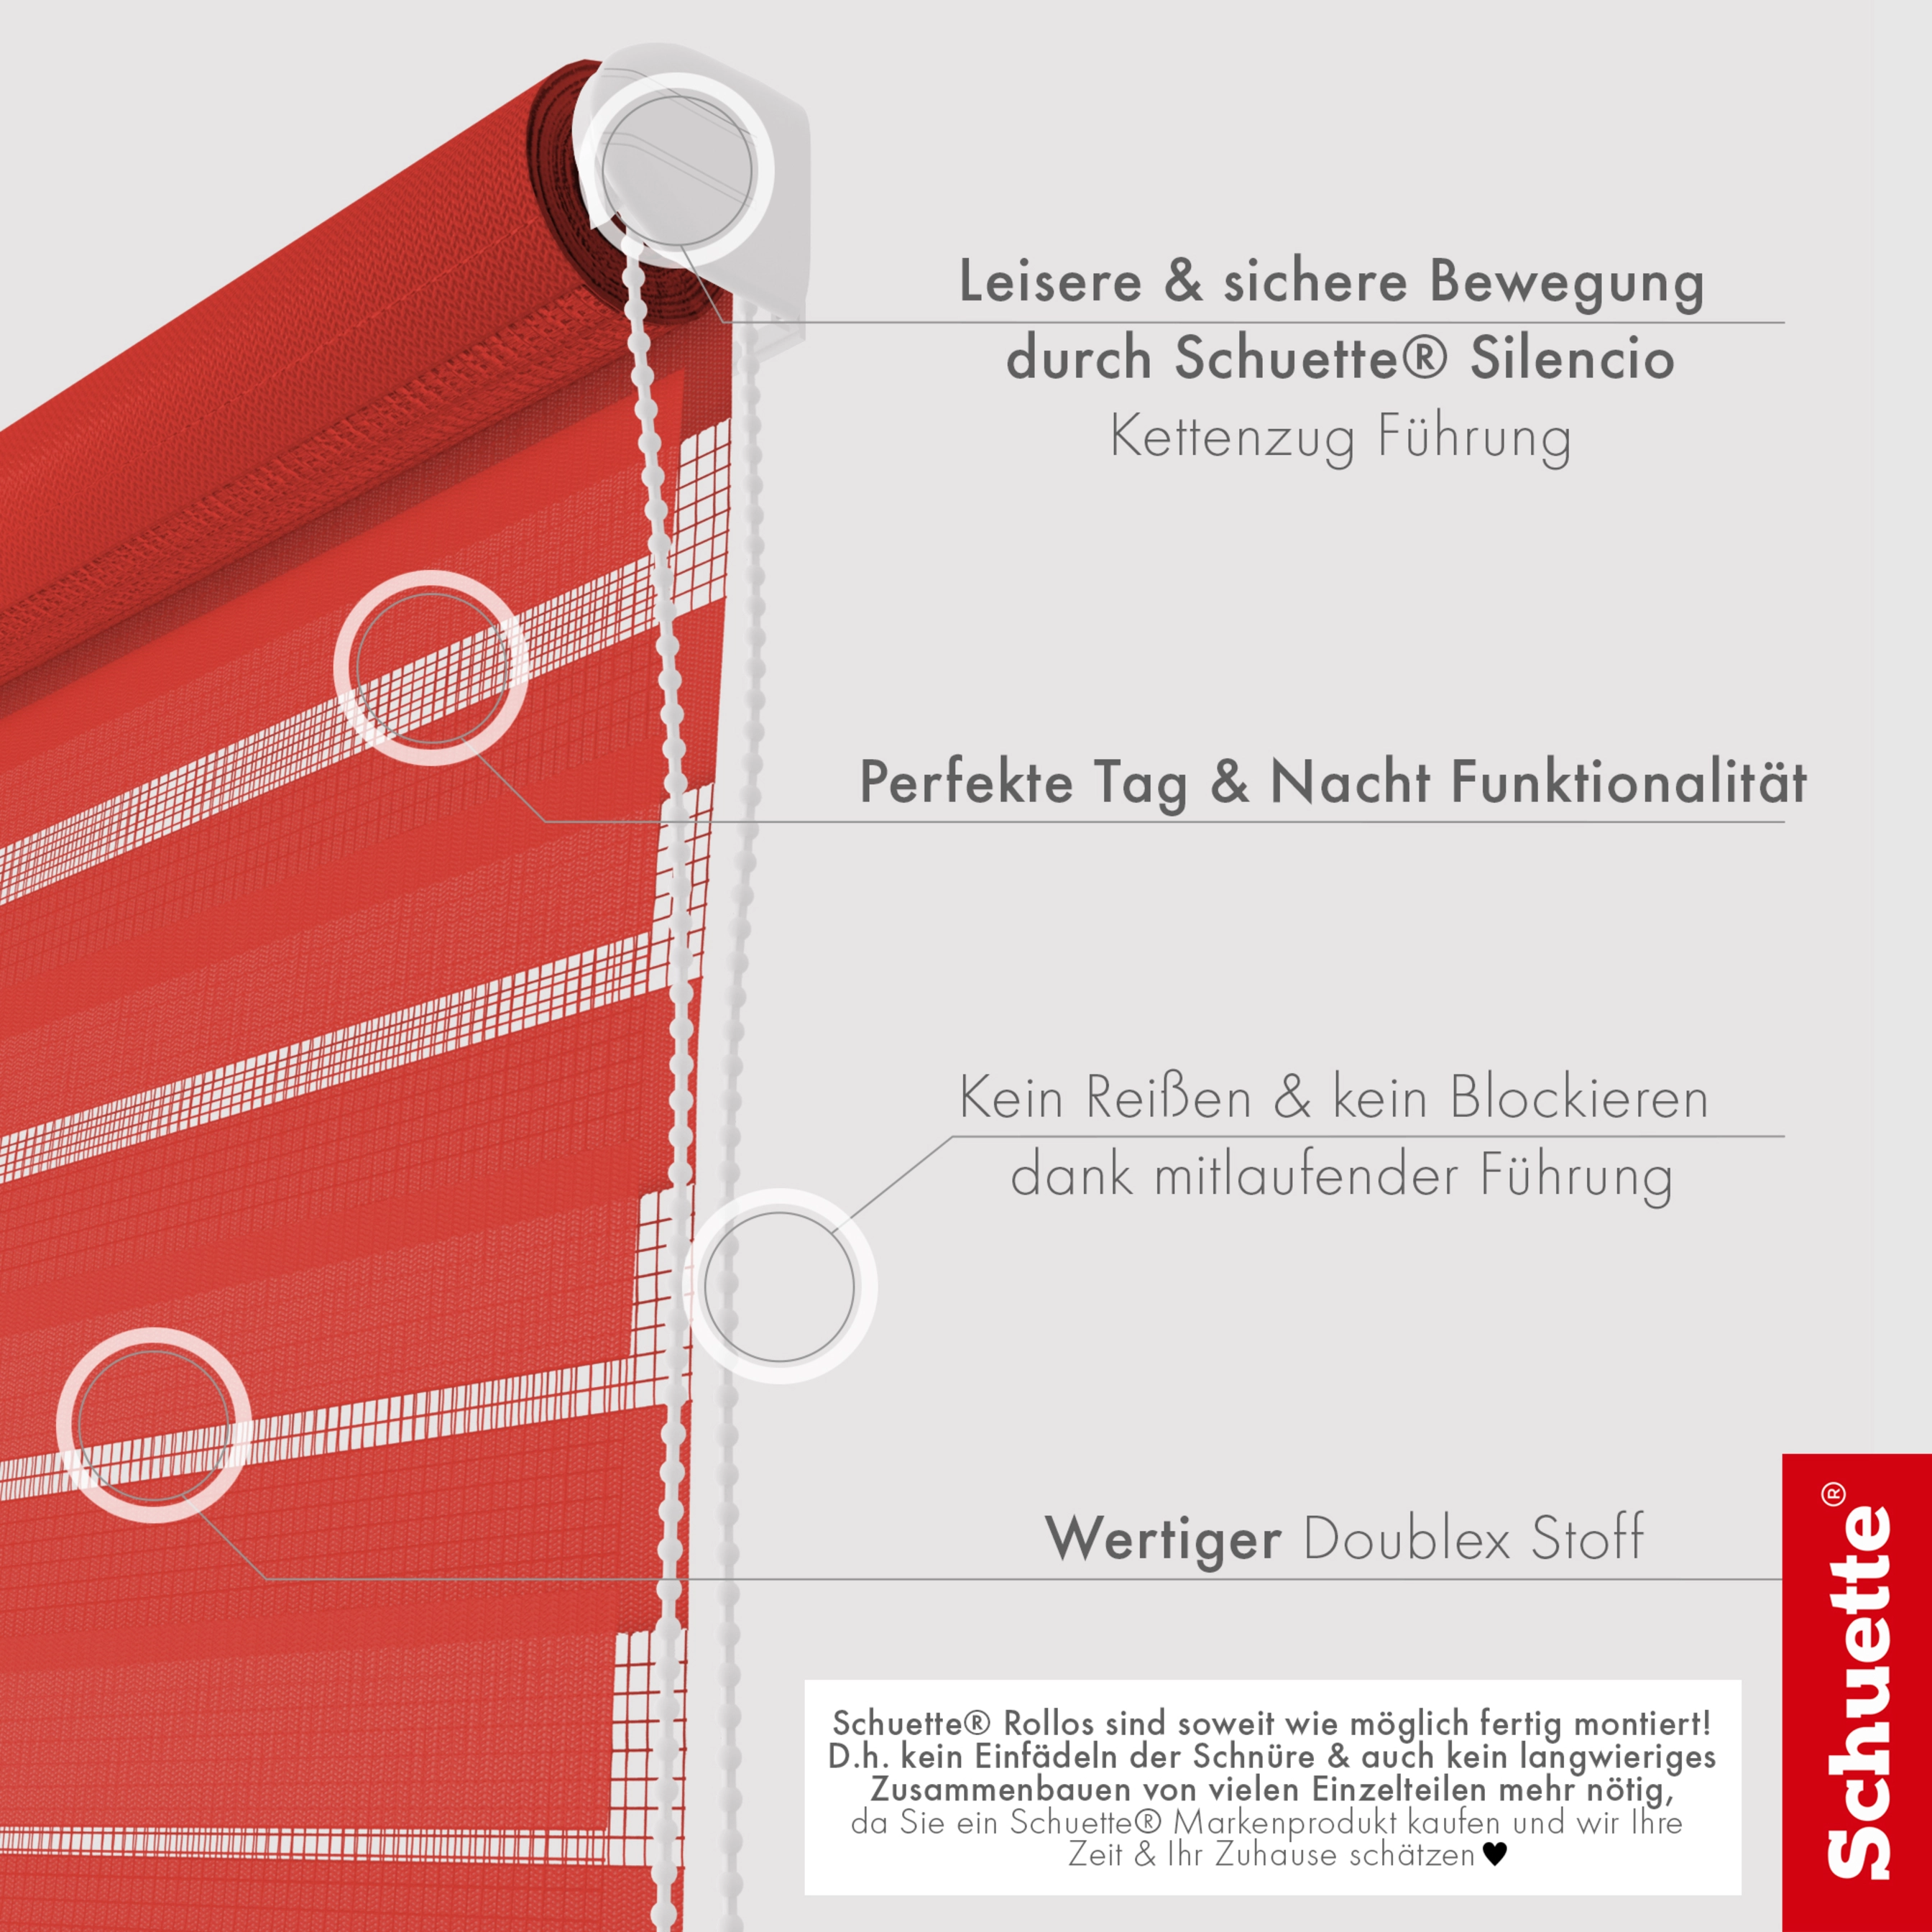 Schuette® Rollo ohne Bohren & mit Bohren 2in1 • Nacht Doppelrollo Kollektion: Red Rose (Rot) • Profilfarbe: Weiß